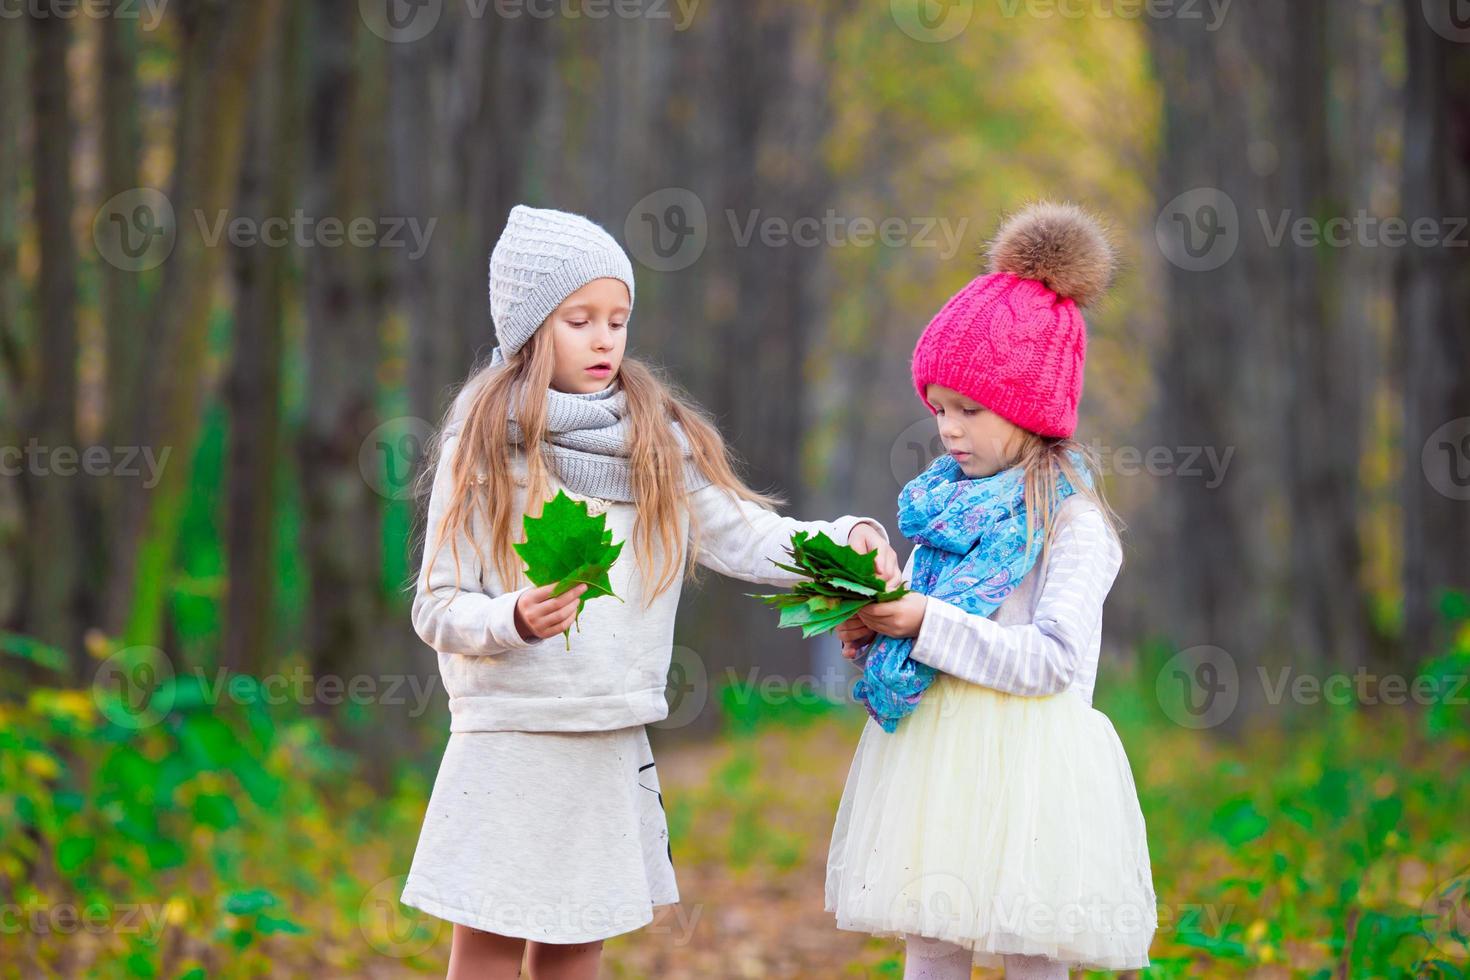 petites filles adorables à l'extérieur lors d'une chaude journée d'automne ensoleillée photo